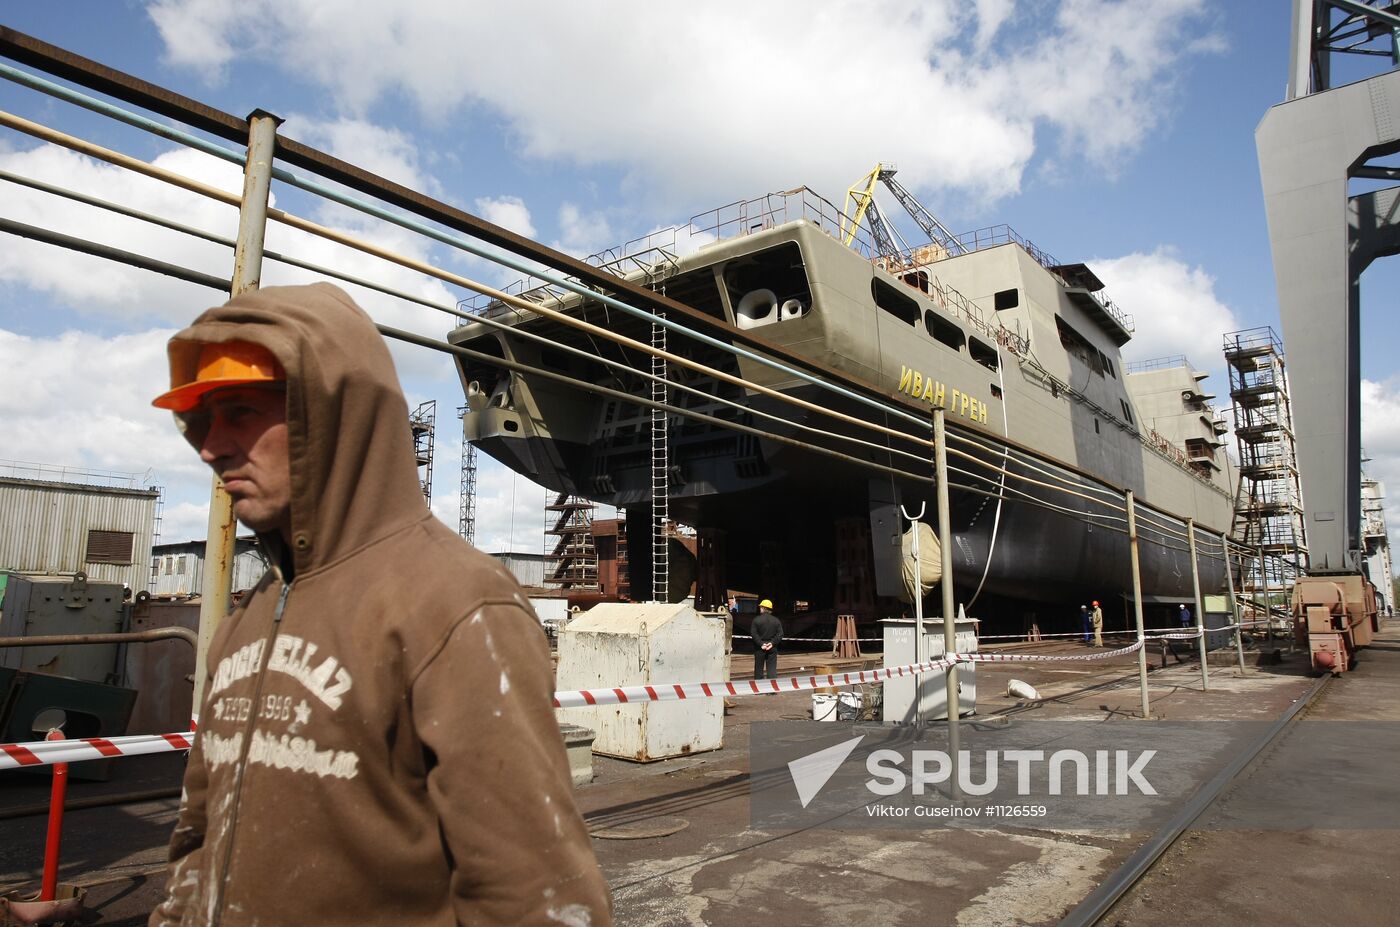 Landing craft "Ivan Gren" at Yantar Shipyard